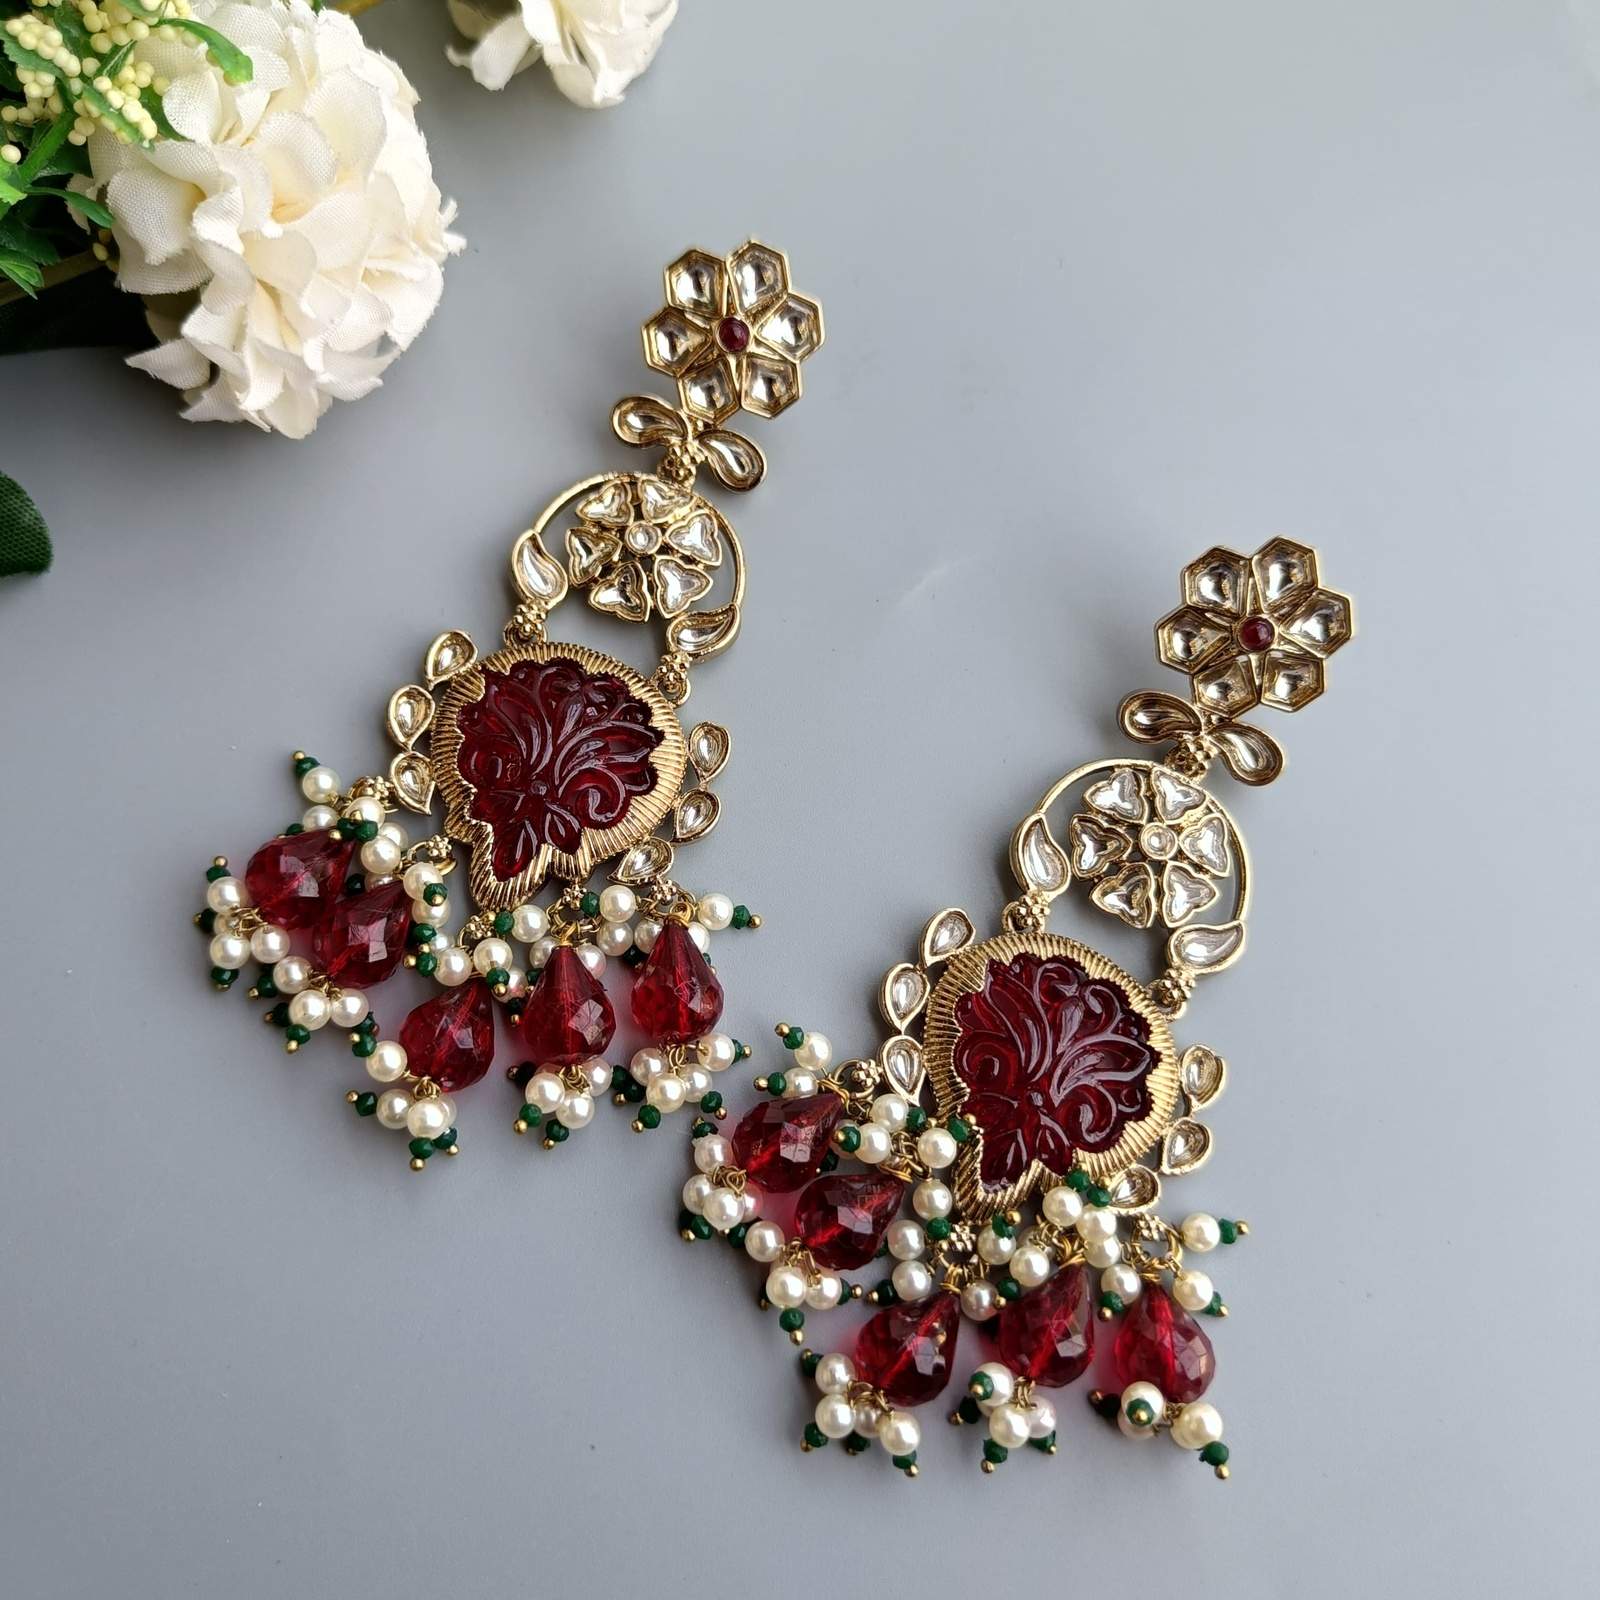 Nayaab Masha earrings